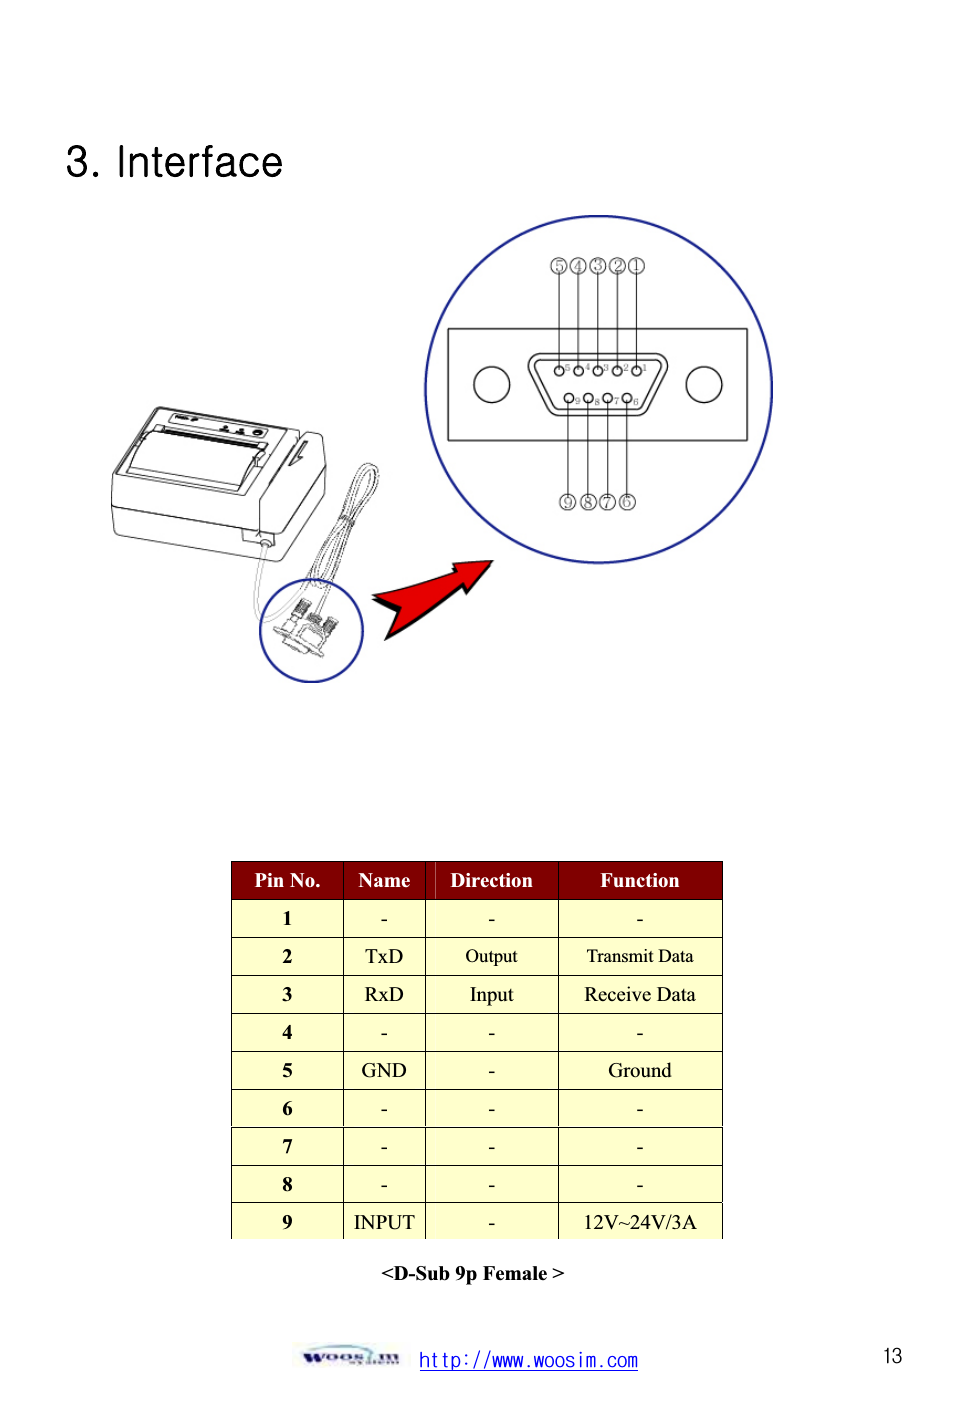 ٻۃۏۏۋڕڊڊےےےډےۊۊێۄۈډھۊۈٻڌڎZUGpGٻٻٻٻٻٻٻٻٻٻٻٻٻٻٻٻٻٻٻٻٻٻٻٻٻٻٻٻٻٻٻٻٻThe Porti-PC40 printer has an RS-232C interface is connected by means of a 9p D-sub. In the following table, the signals present on the connector are listed: ٻٻٻٻٻٻٻٻٻٻٻٻٻٻٻٻٻٻٻPin No.  Name Direction  Function 1- - -2TxD Output Transmit Data3RxD Input  Receive Data 4- - -5GND -Ground 6- - -7- - -8- - -9INPUT -12V~24V/3A &lt;D-Sub 9p Female &gt; ٻ